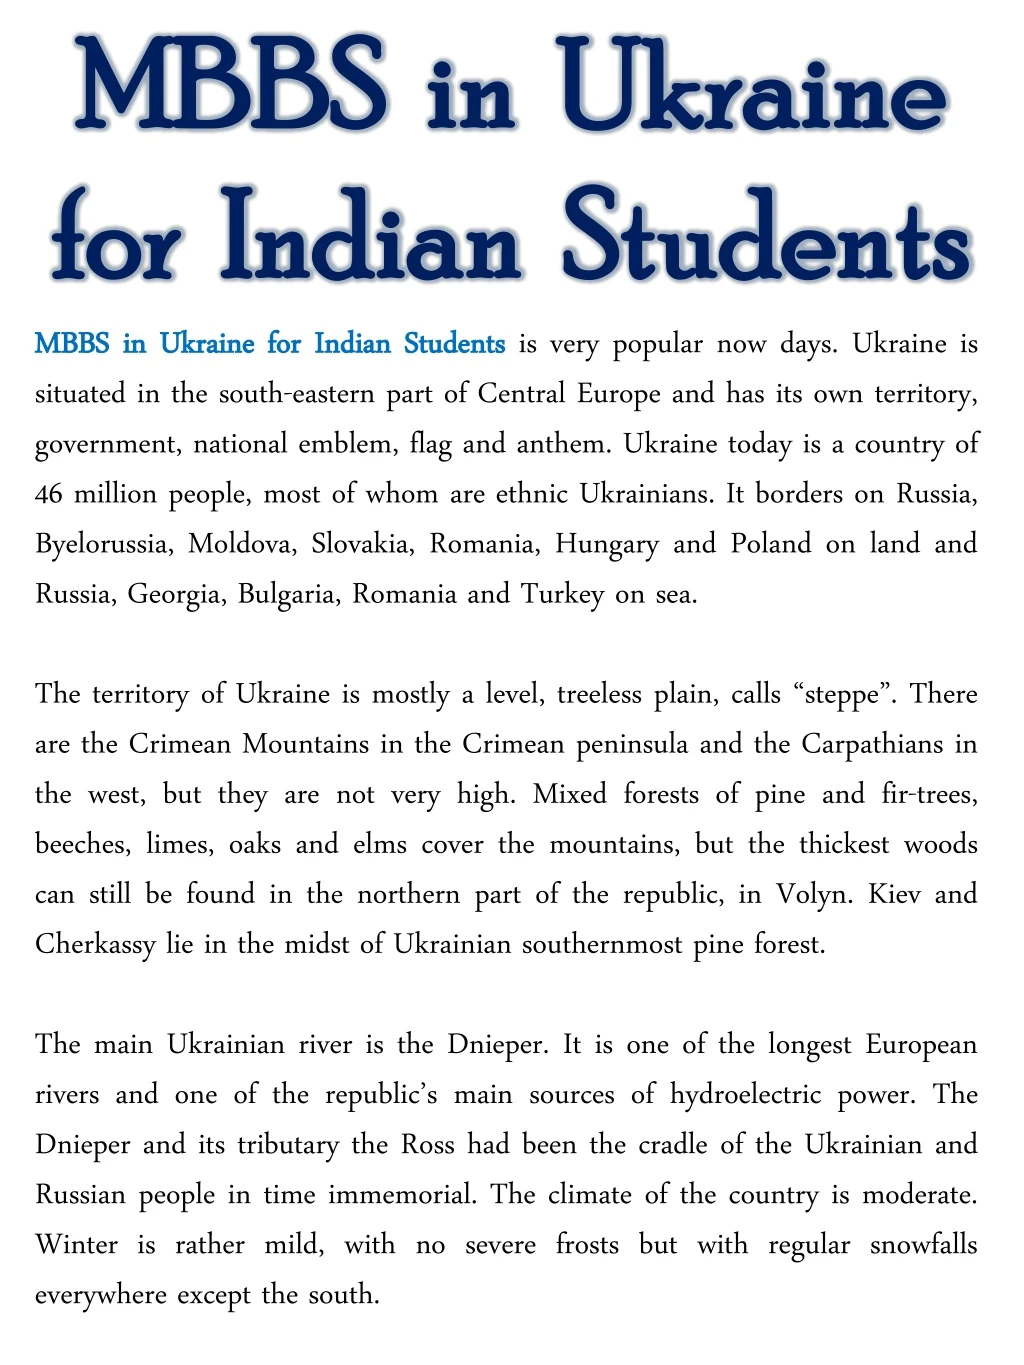 mbbs in ukraine mbbs in ukraine for indian